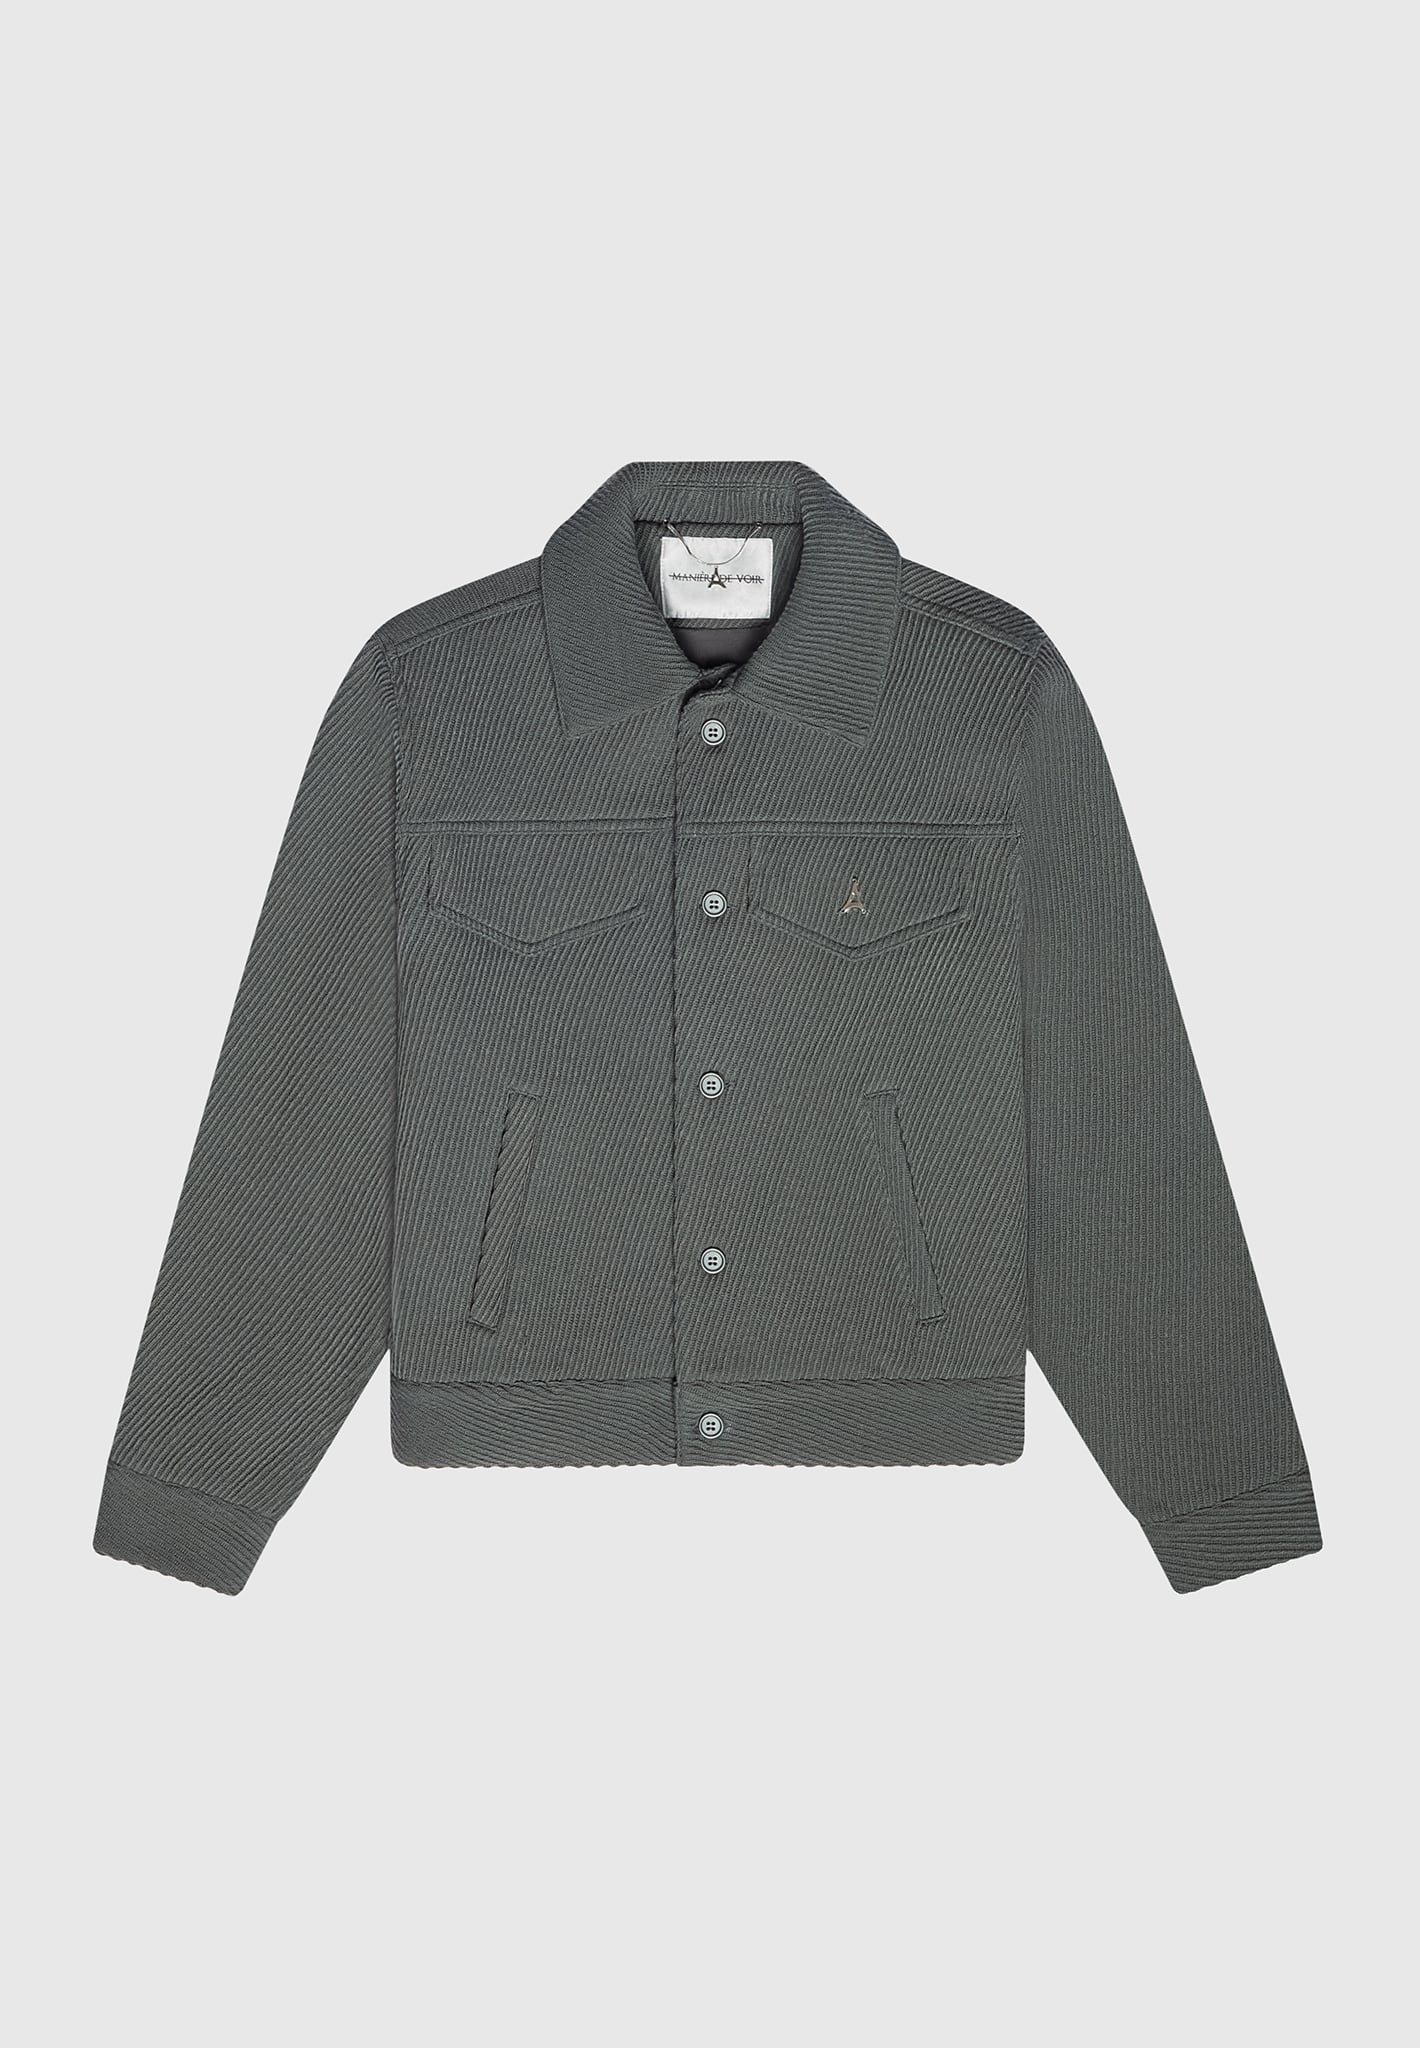 Louis Vuitton Shearling Embossed Monogram Jacket BLACK. Size 60